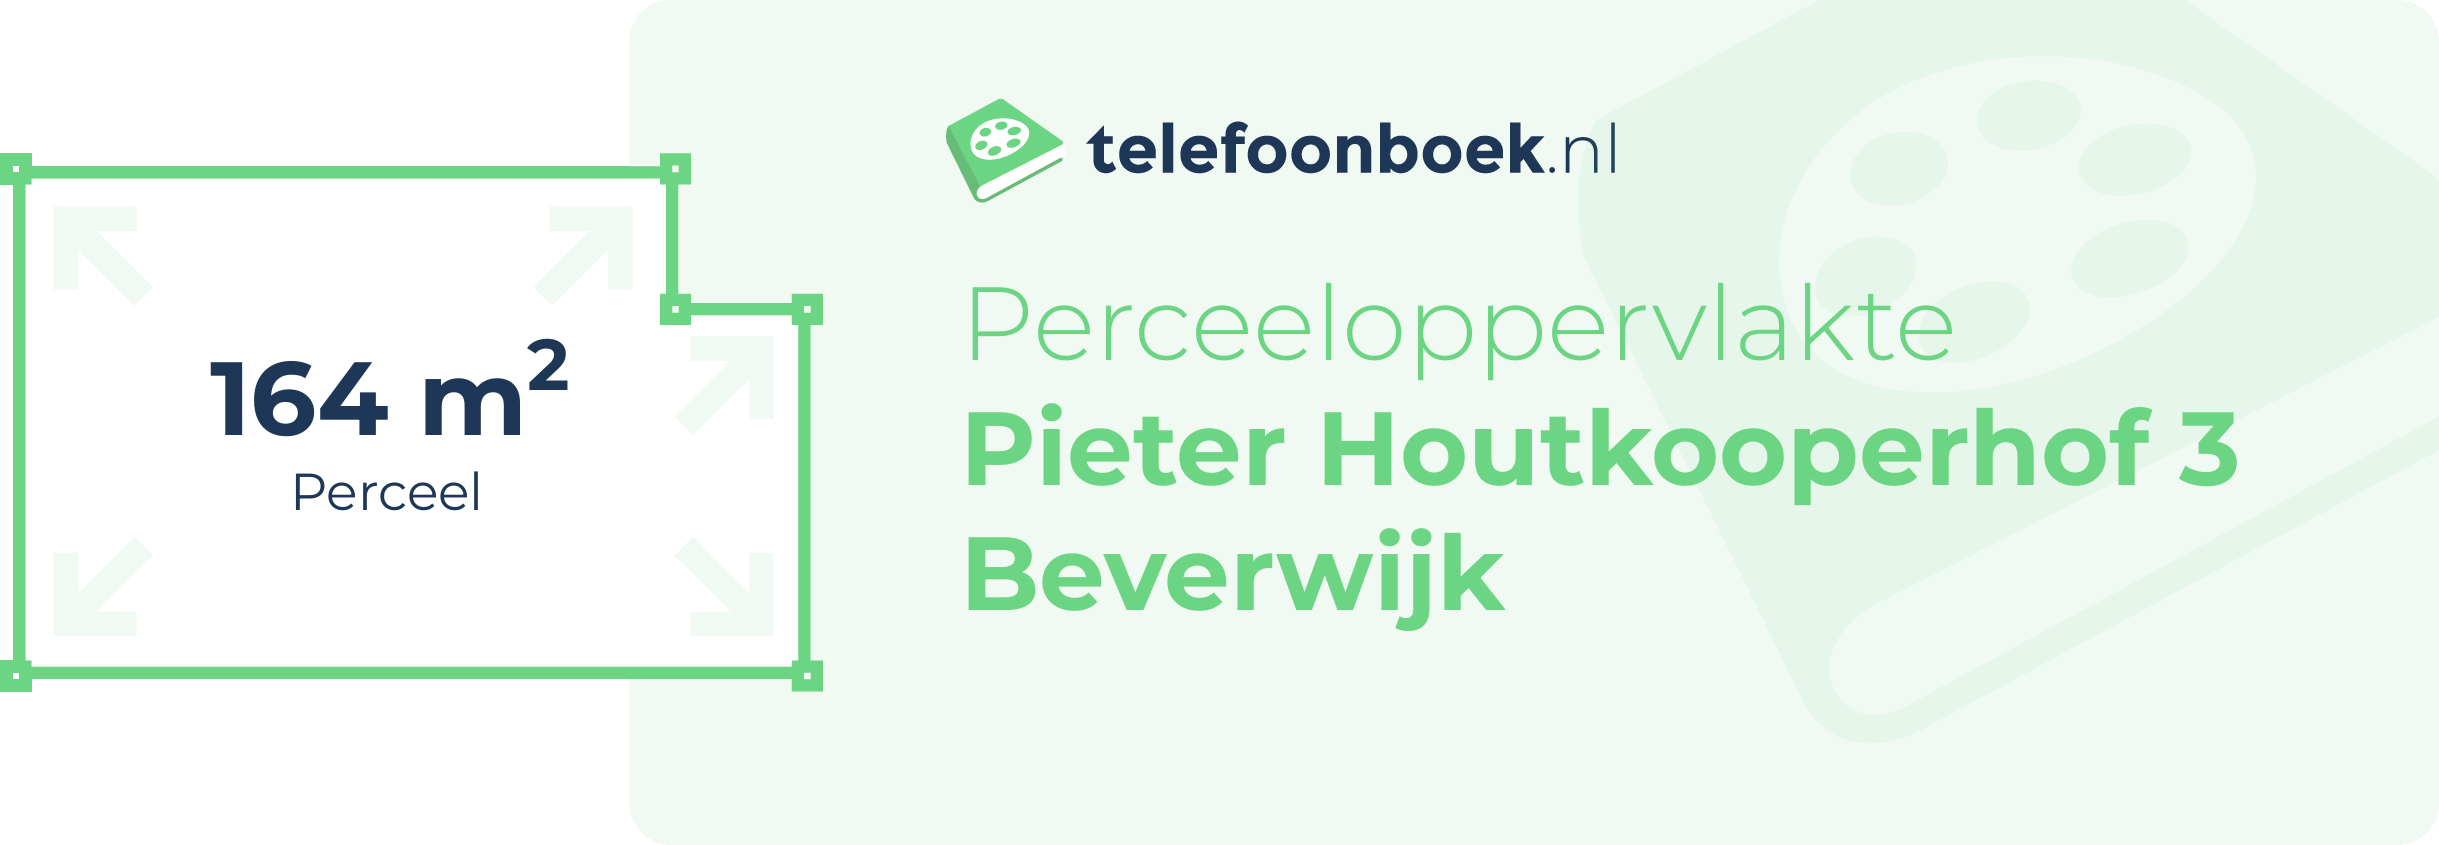 Perceeloppervlakte Pieter Houtkooperhof 3 Beverwijk